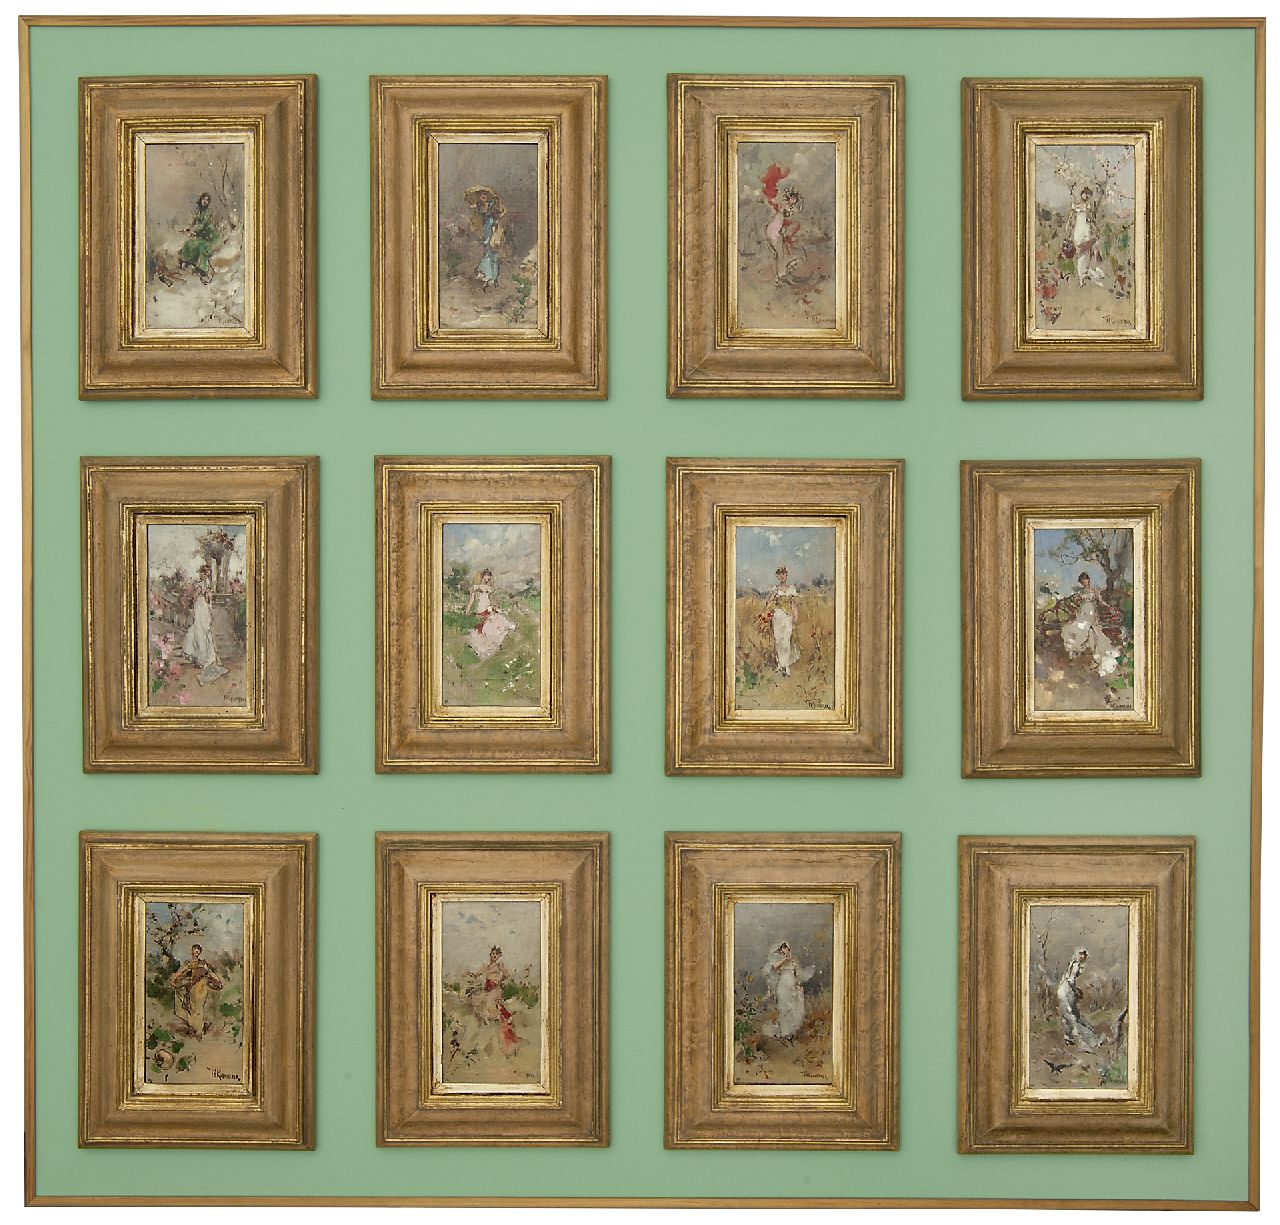 Kaemmerer F.H.  | Frederik Hendrik Kaemmerer | Schilderijen te koop aangeboden | Januari - sterrenbeeld Steenbok (tezamen met 15949 t/m 15960), olieverf op schildersboard 18,5 x 10,3 cm, gesigneerd rechtsonder